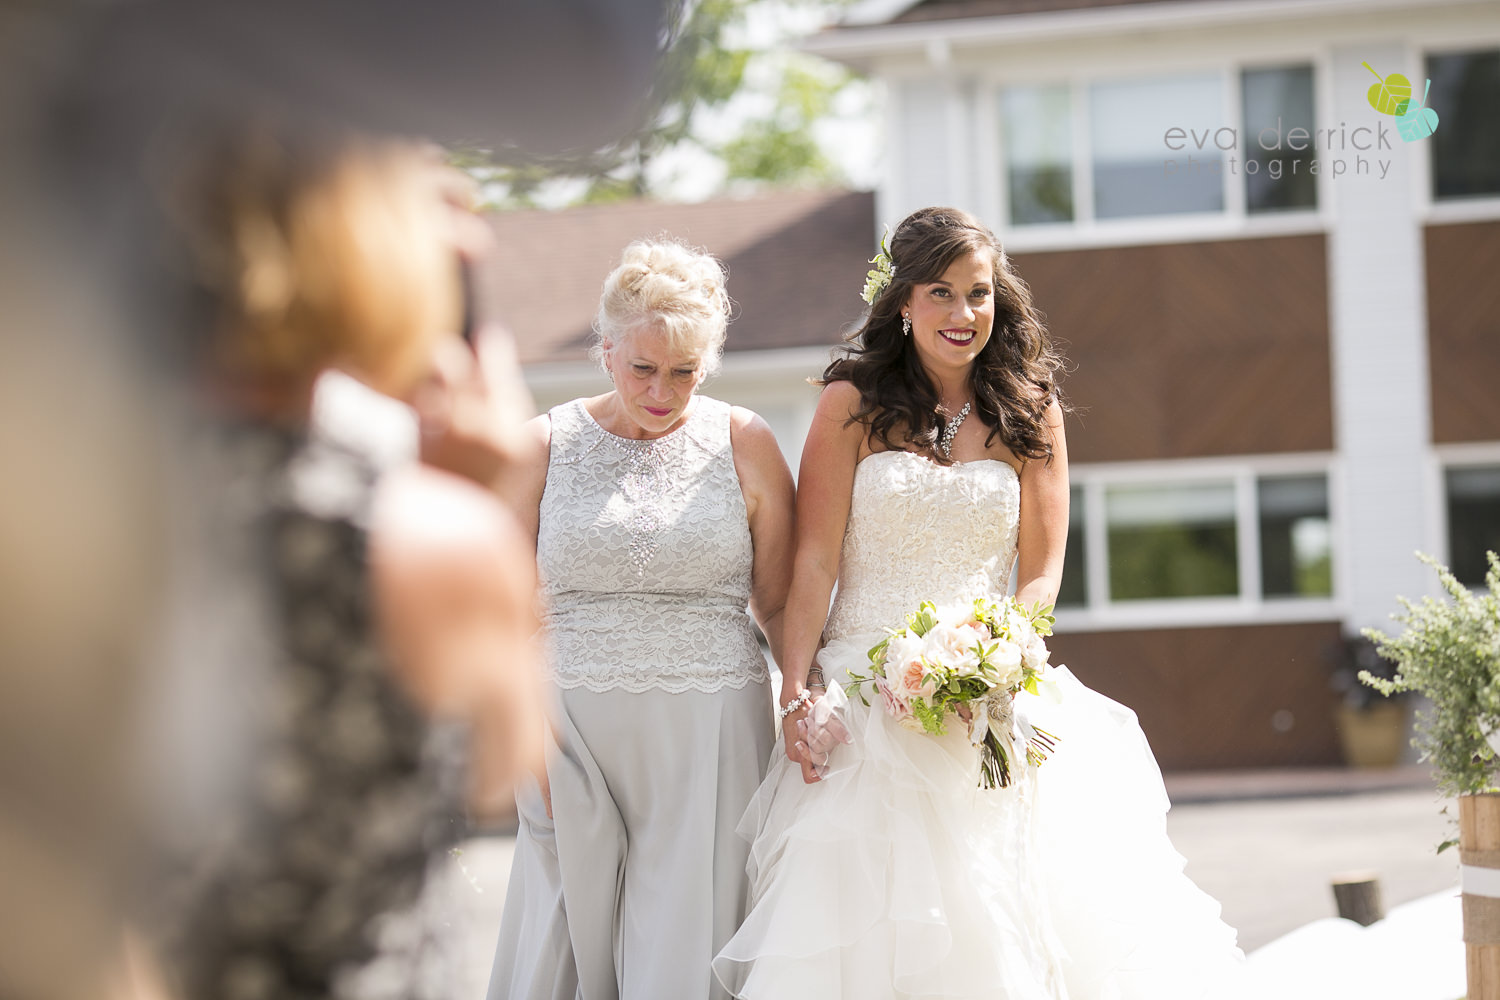 Niagara-Wedding-photographer-outdoor-wedding-photo-by-eva-derrick-photography-015.JPG